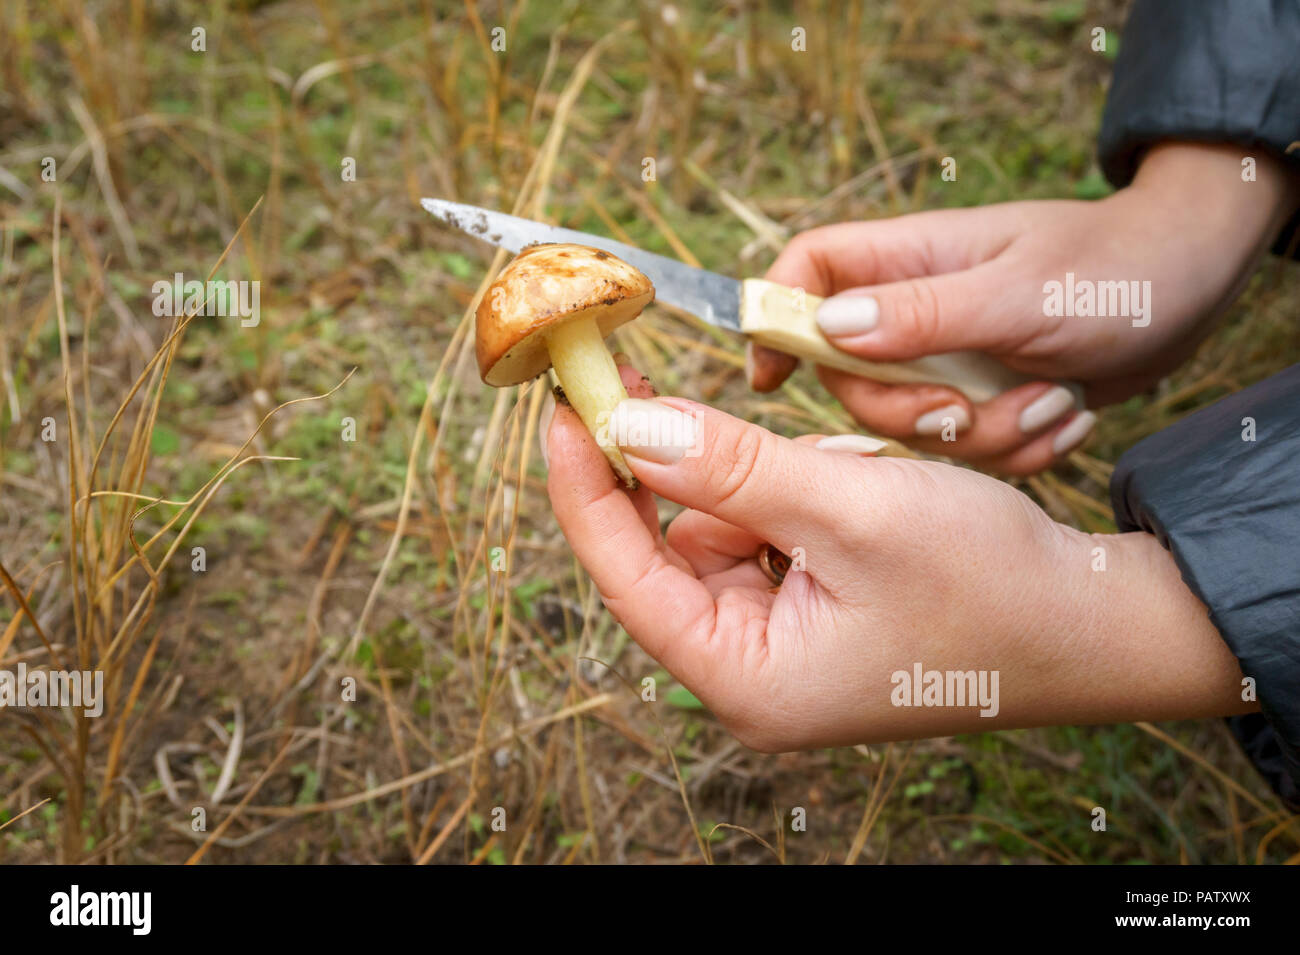 Ножка у гриба козленка при отваривании